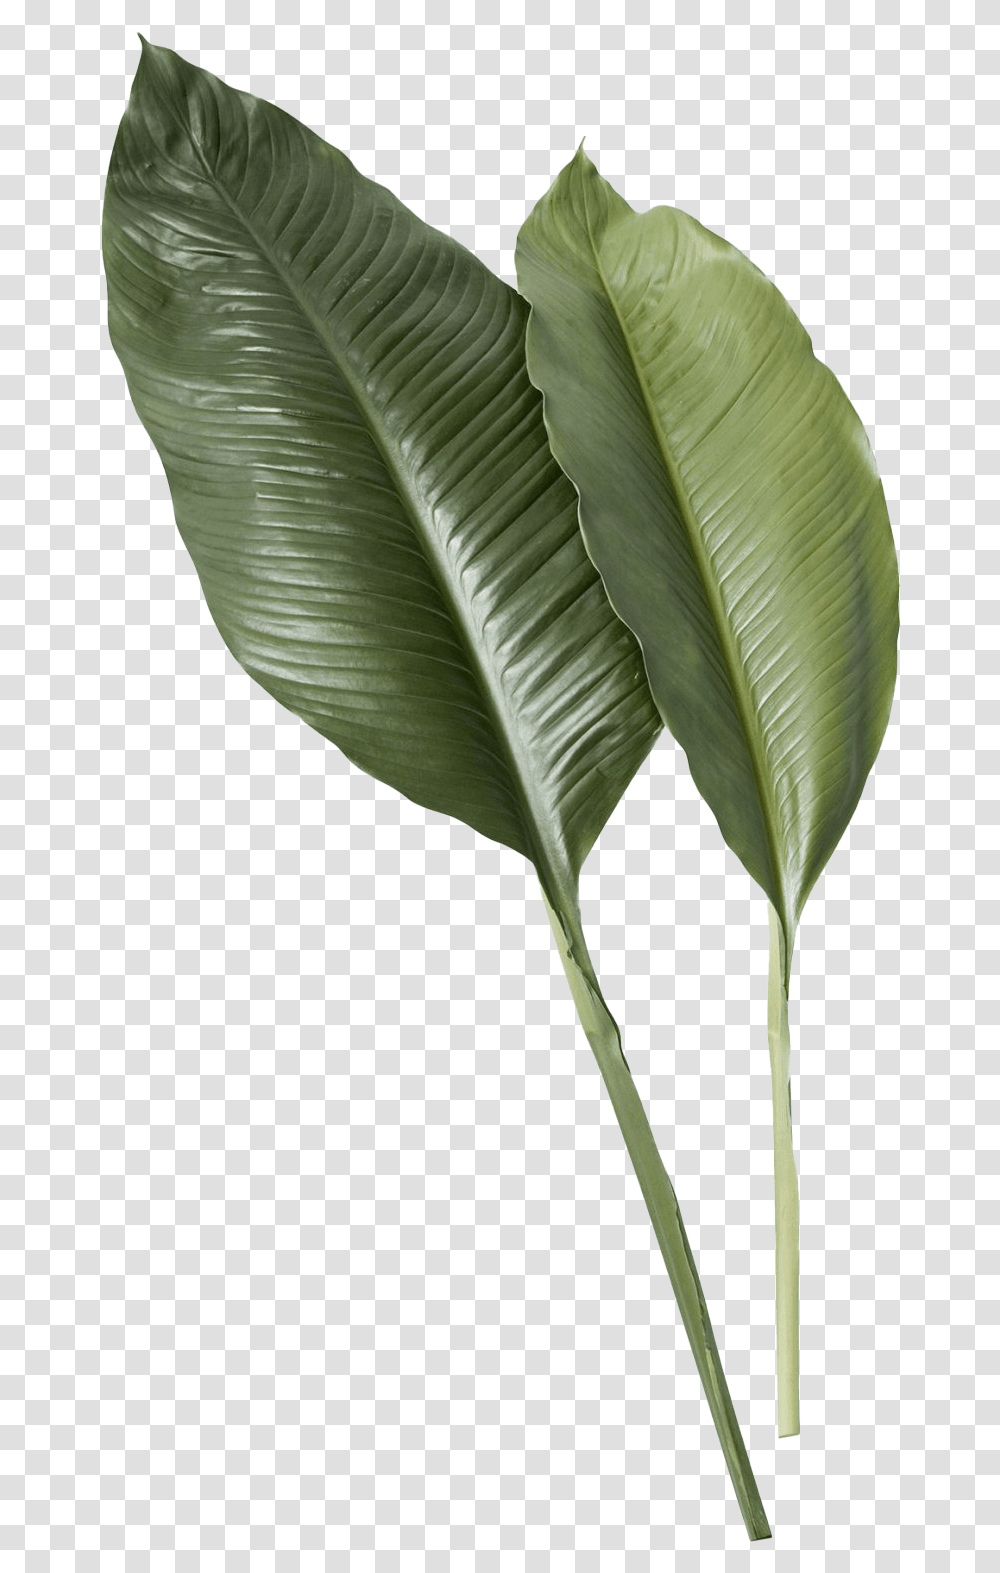 Leaf Image Tropical Leaves, Plant, Bird, Animal, Flower Transparent Png